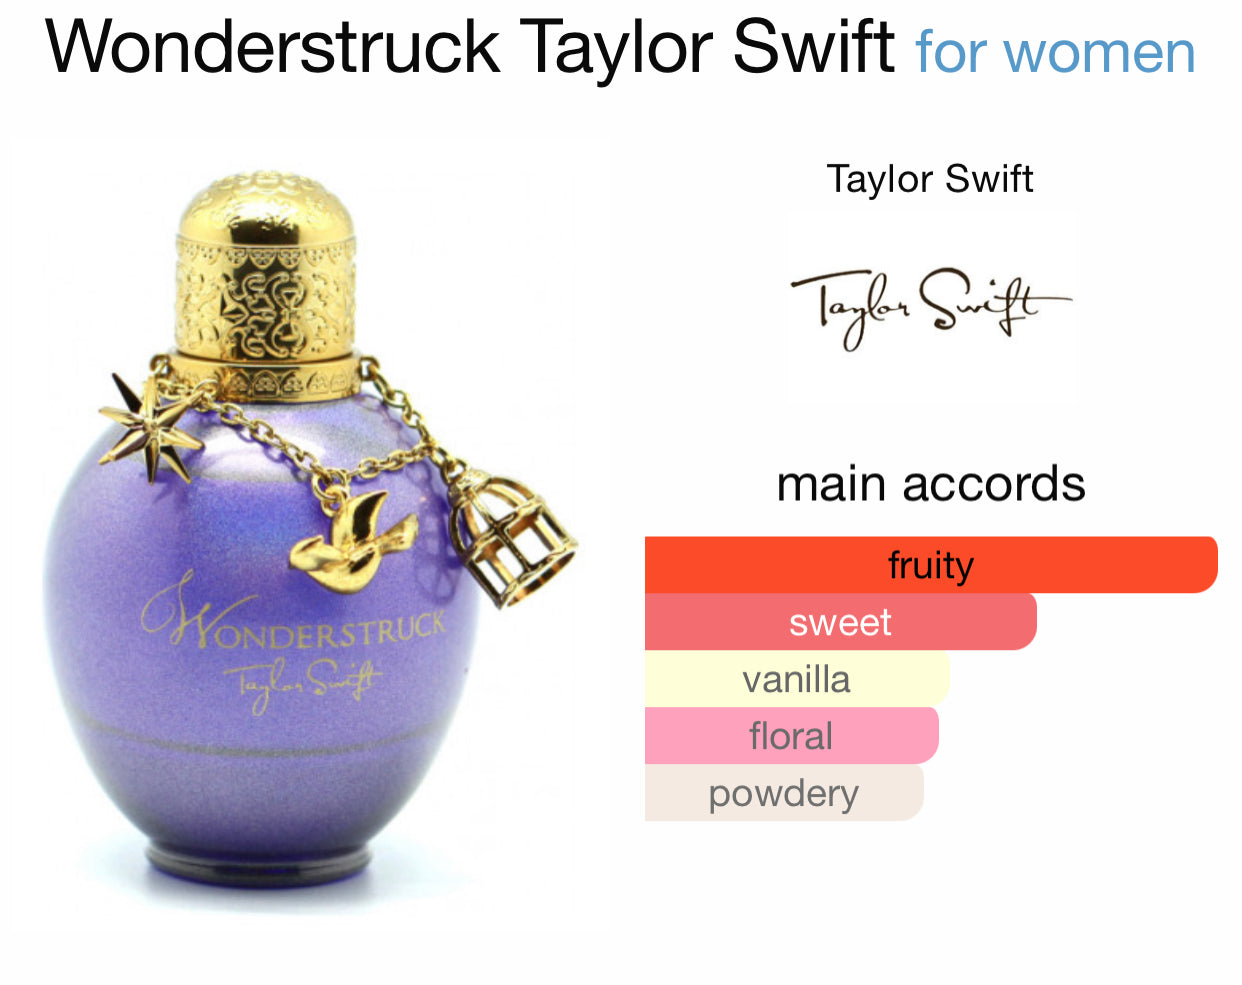 Inspired by Wonderstruck Eau De Parfum from Taylor Swift